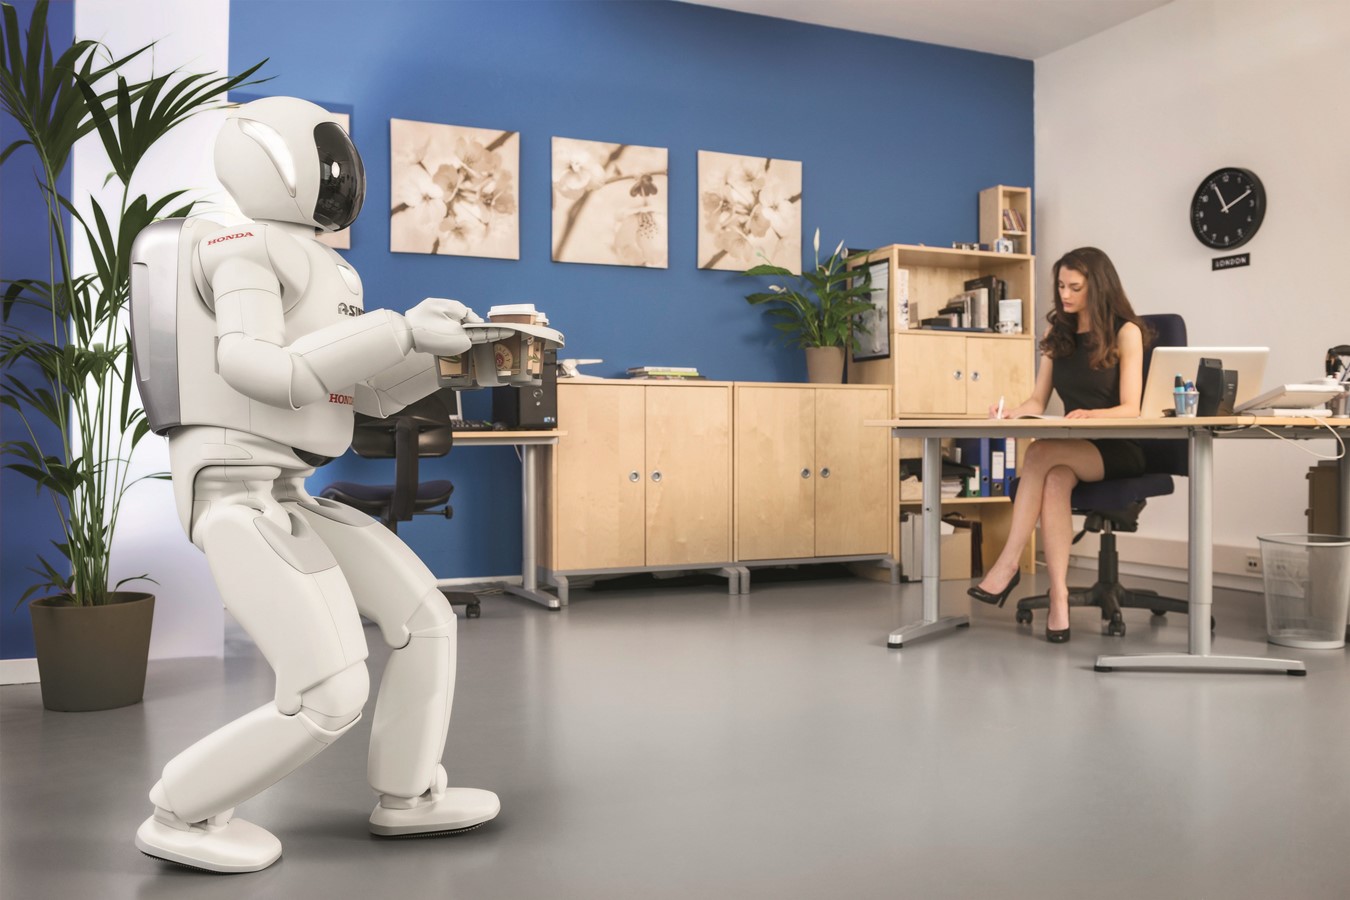 Hondas neueste Version des humanoiden Roboters ASIMO feiert ihr Europa Debut